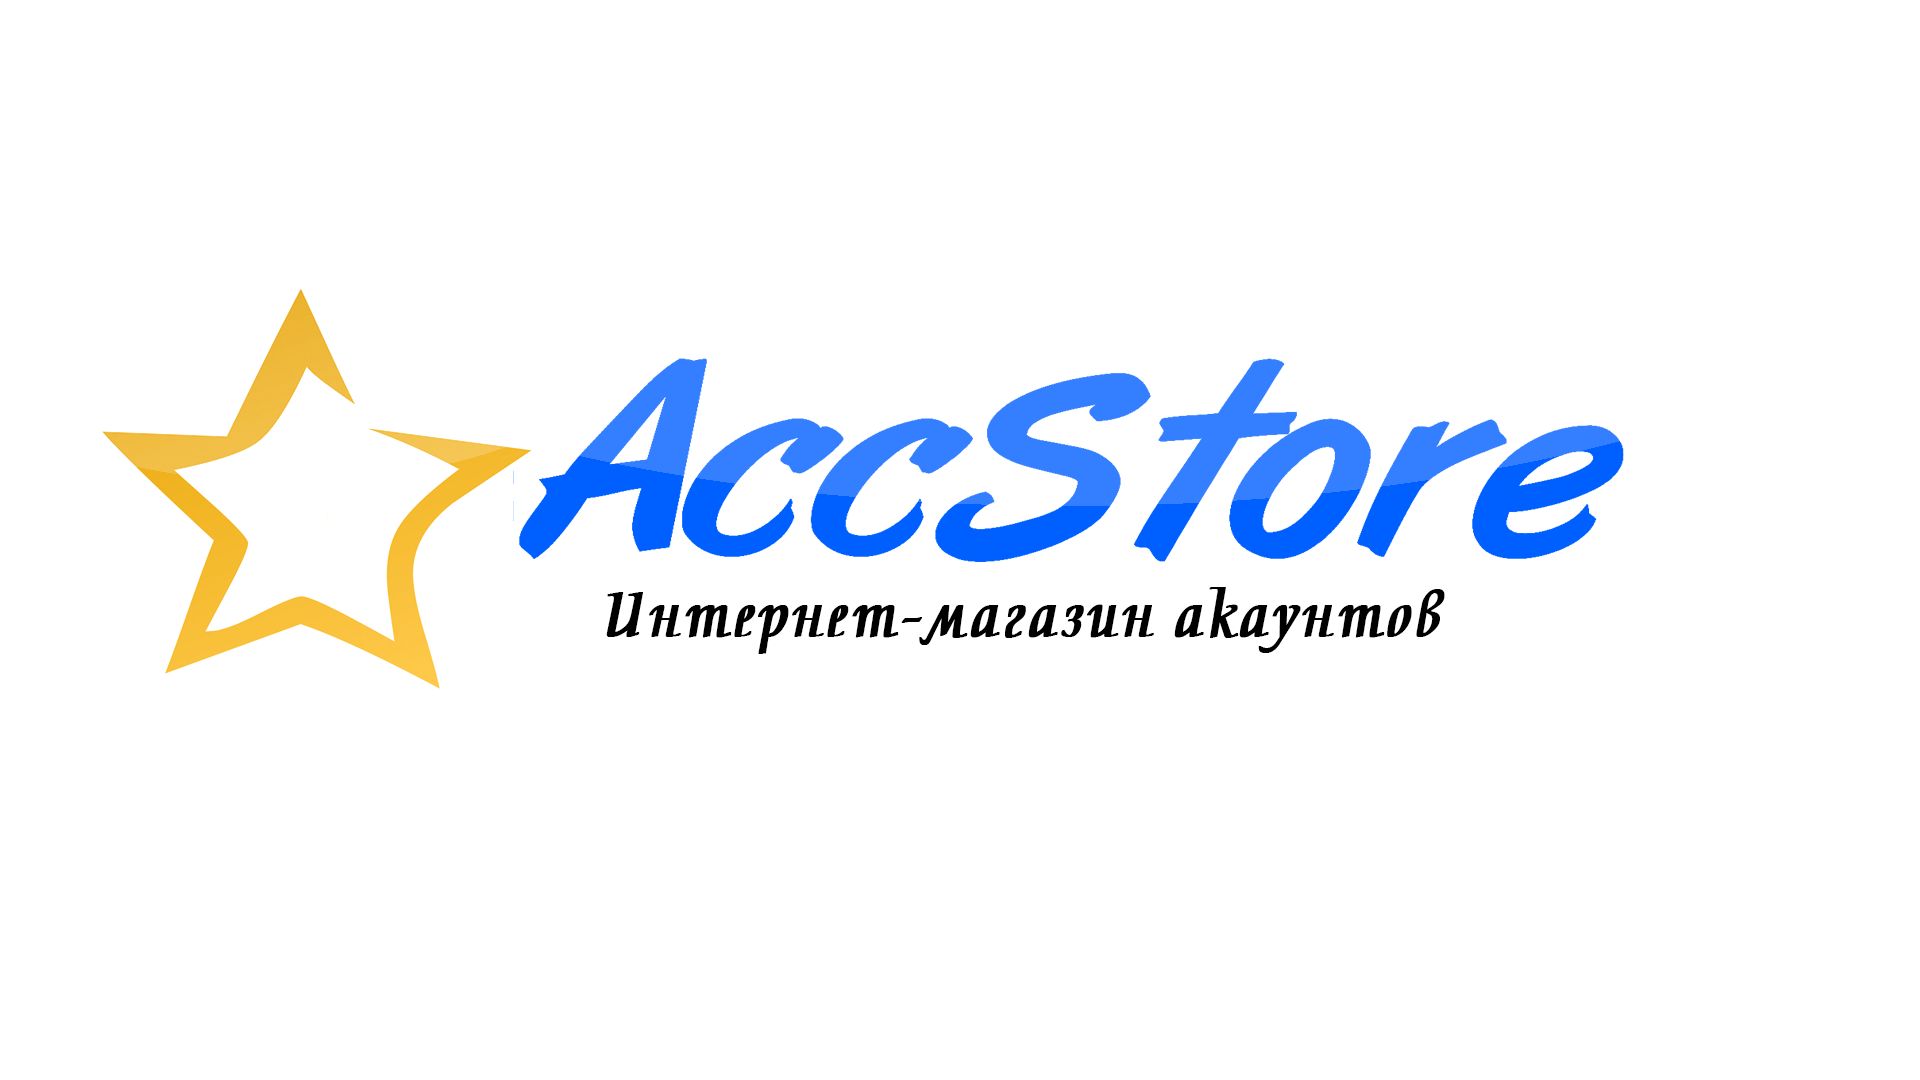 Логотип для магазина аккаунтов - дизайнер RayGamesThe